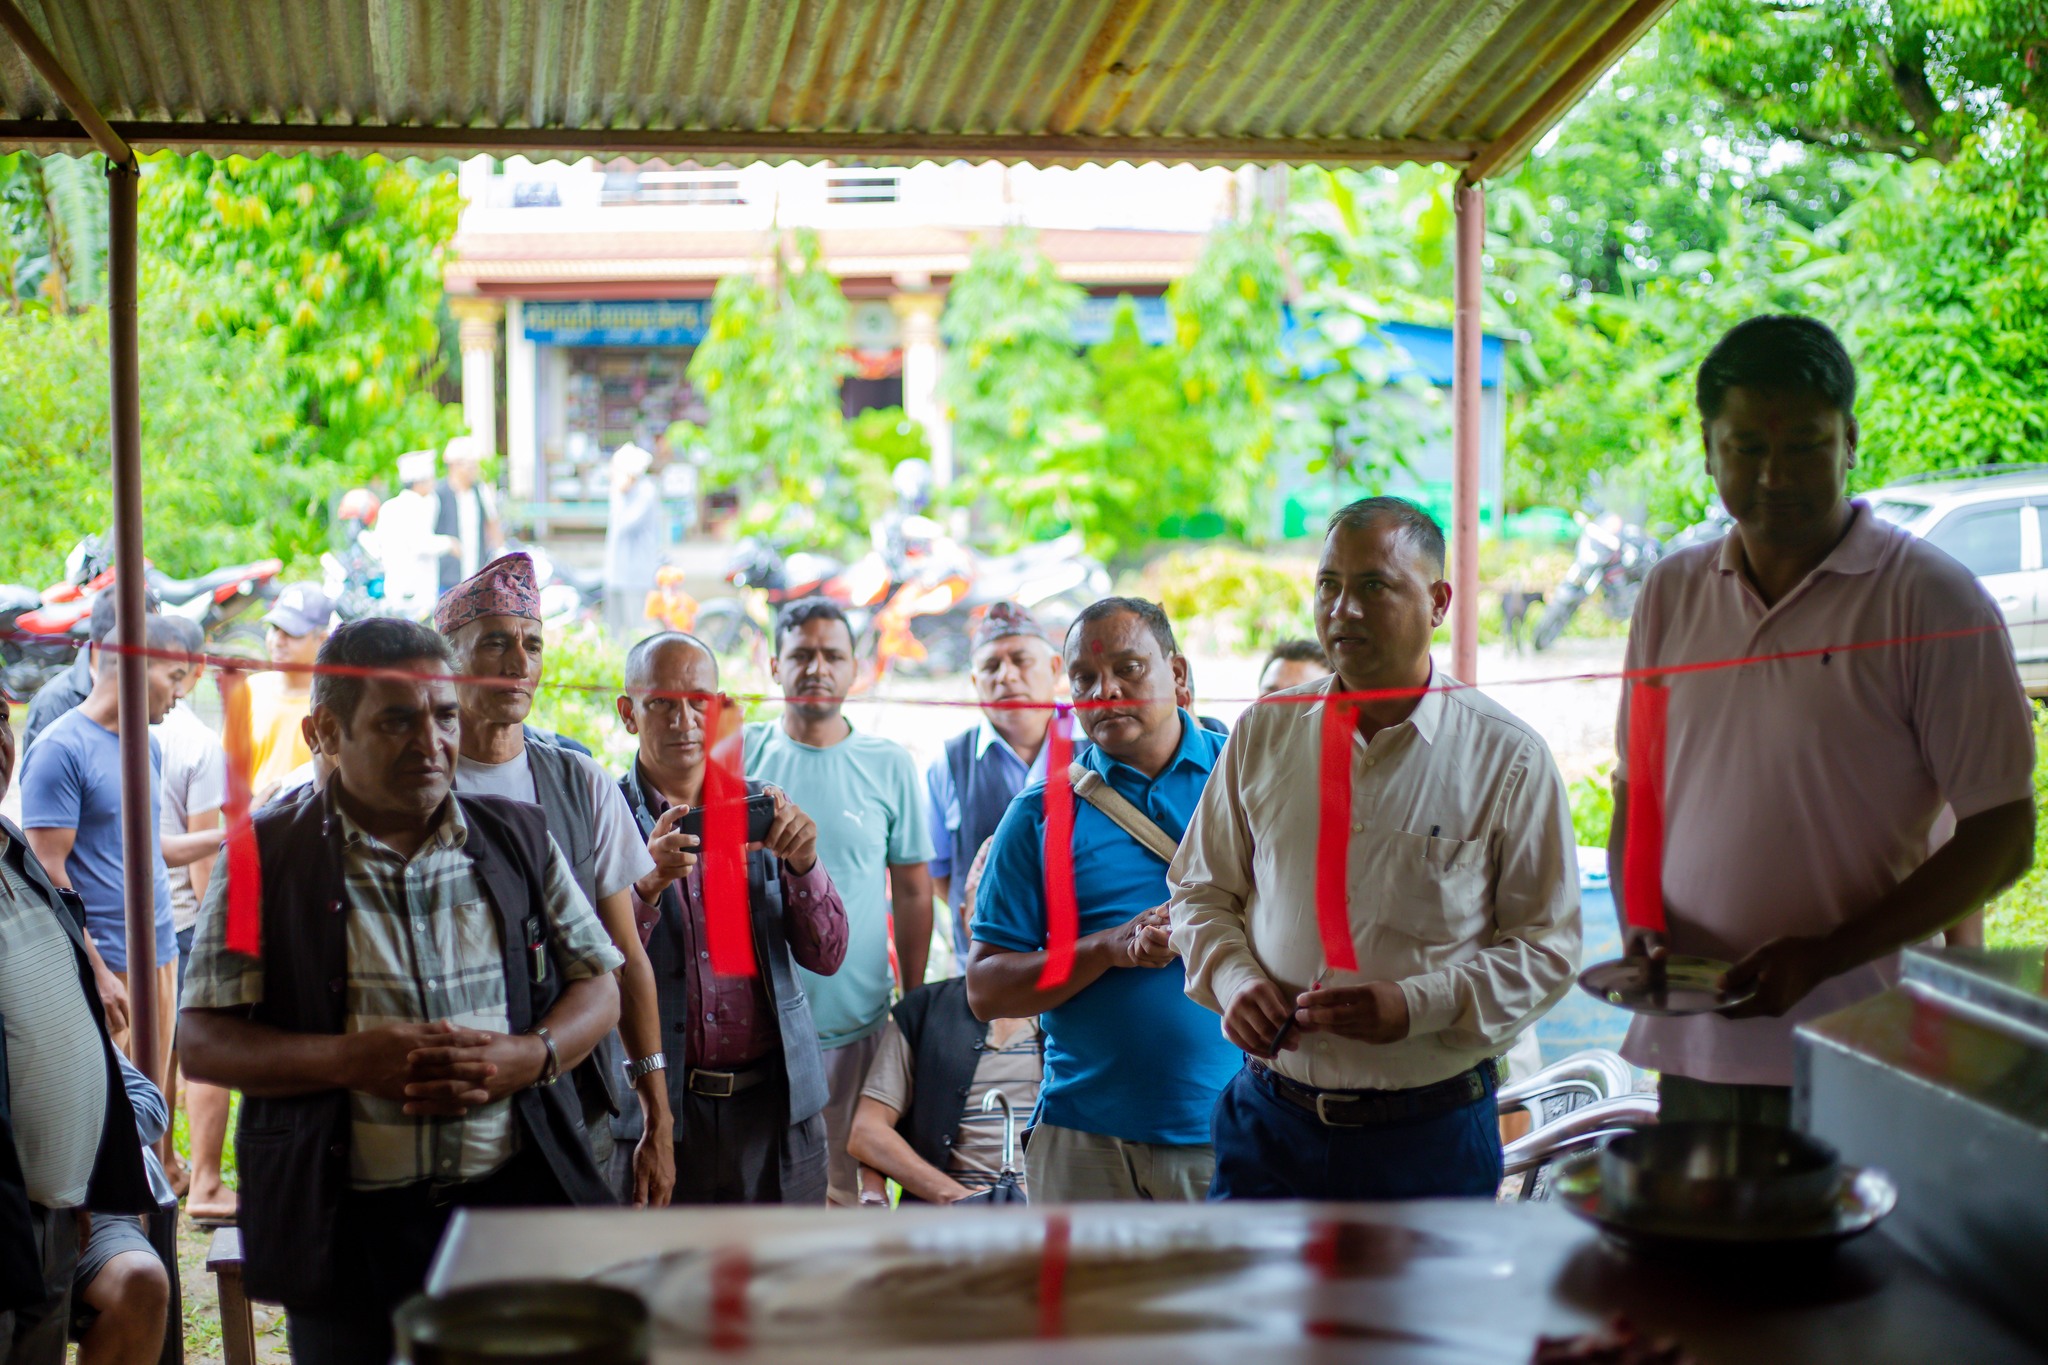 धादिङ,त्रिपुरासुन्दरी : सल्यानटार १  पाचधारे डीलमा दुध चिस्यान केन्द्र स्थापना 